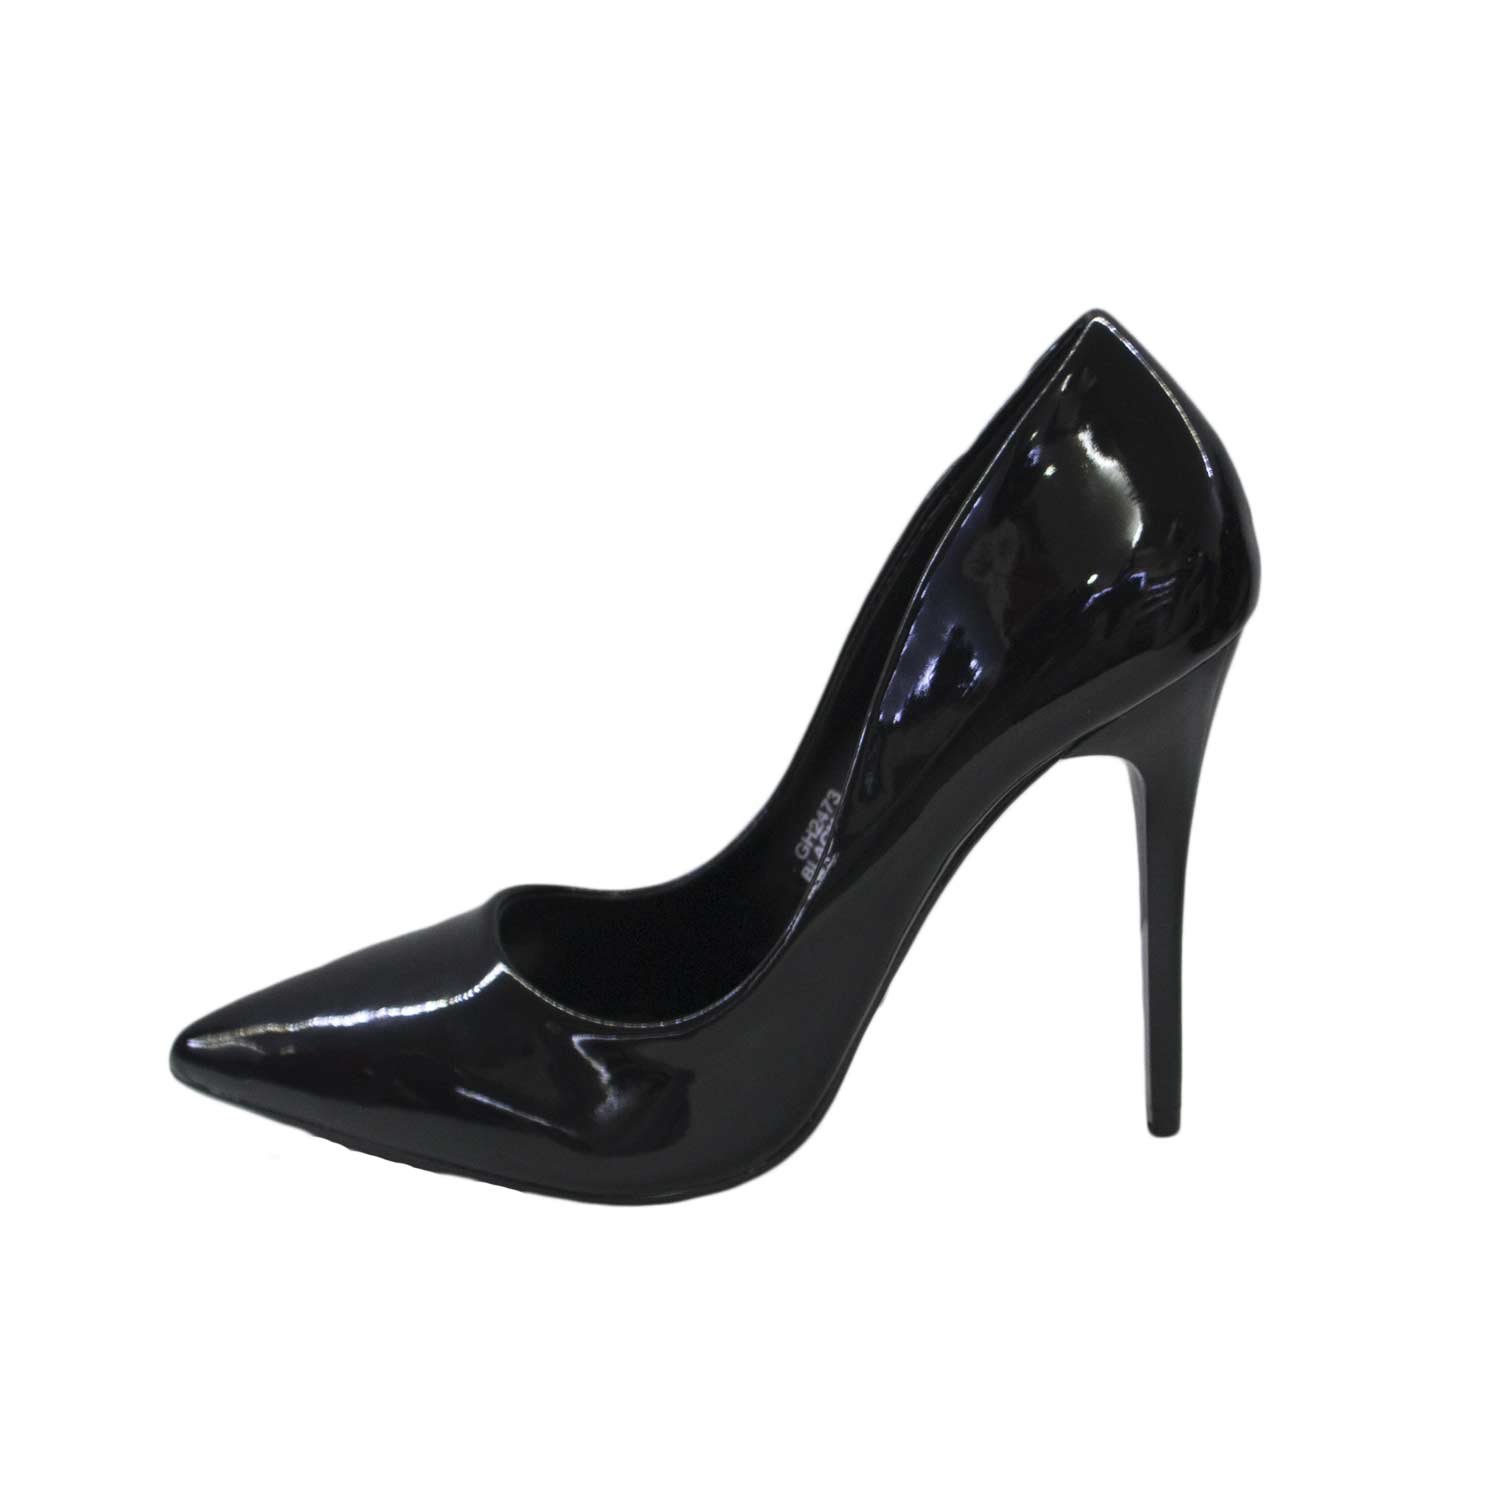 Scarpe donna alte decollete' nero lucide vernice vera pelle a punta tacco a spillo made in Italy moda chic glamour.